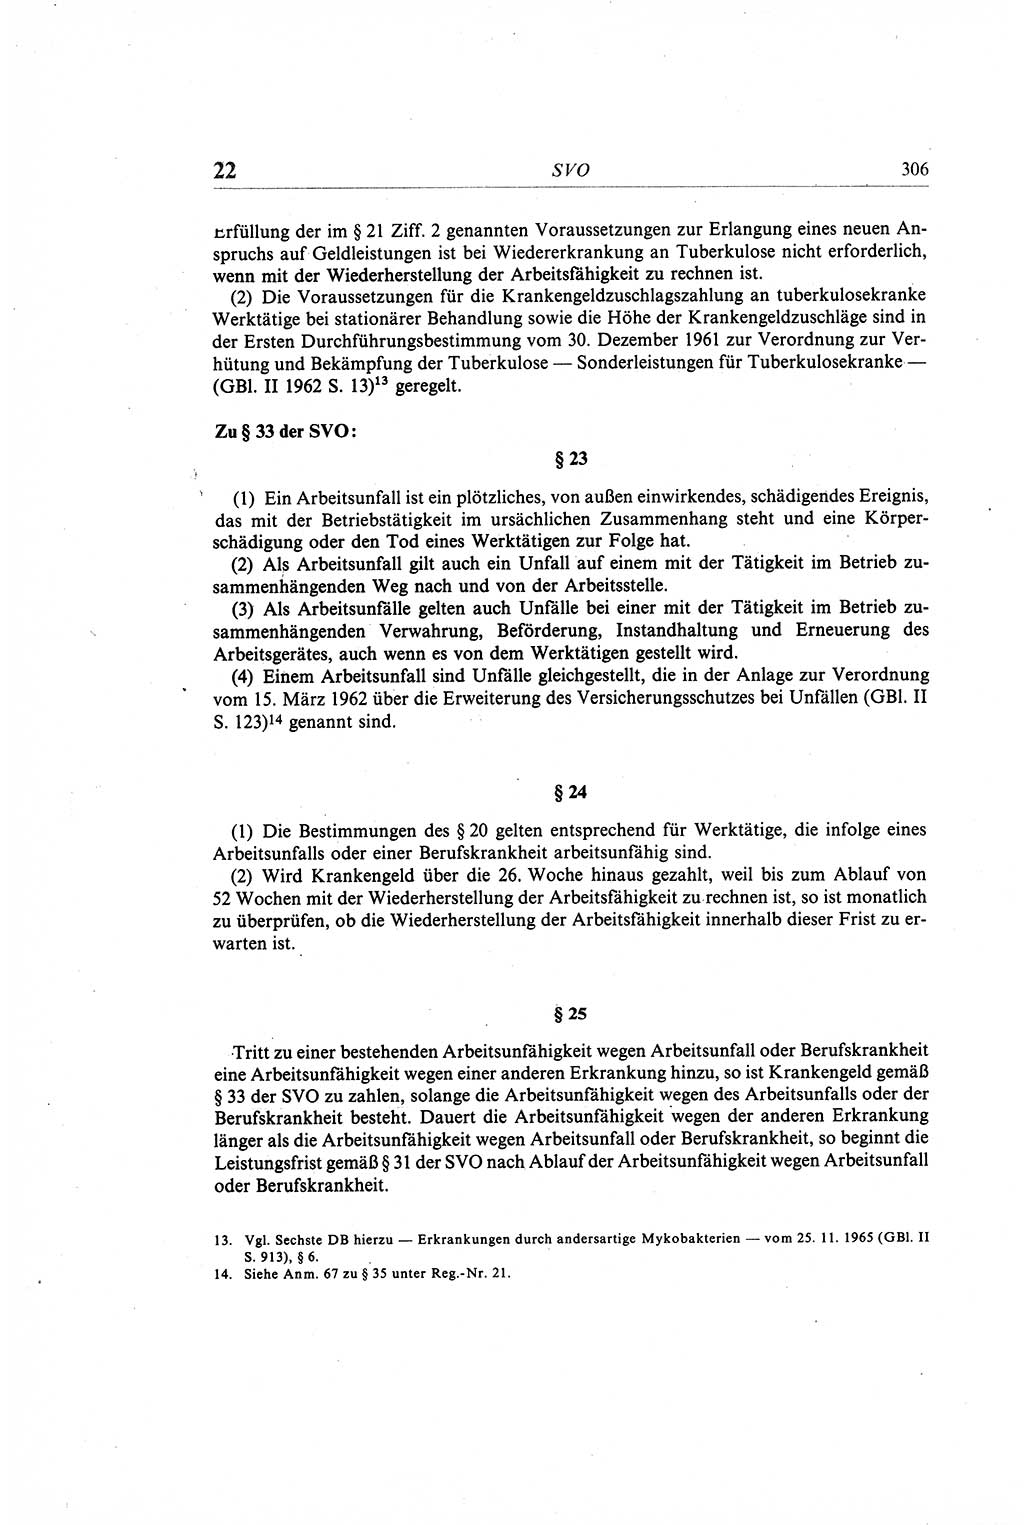 Gesetzbuch der Arbeit (GBA) und andere ausgewählte rechtliche Bestimmungen [Deutsche Demokratische Republik (DDR)] 1968, Seite 306 (GBA DDR 1968, S. 306)